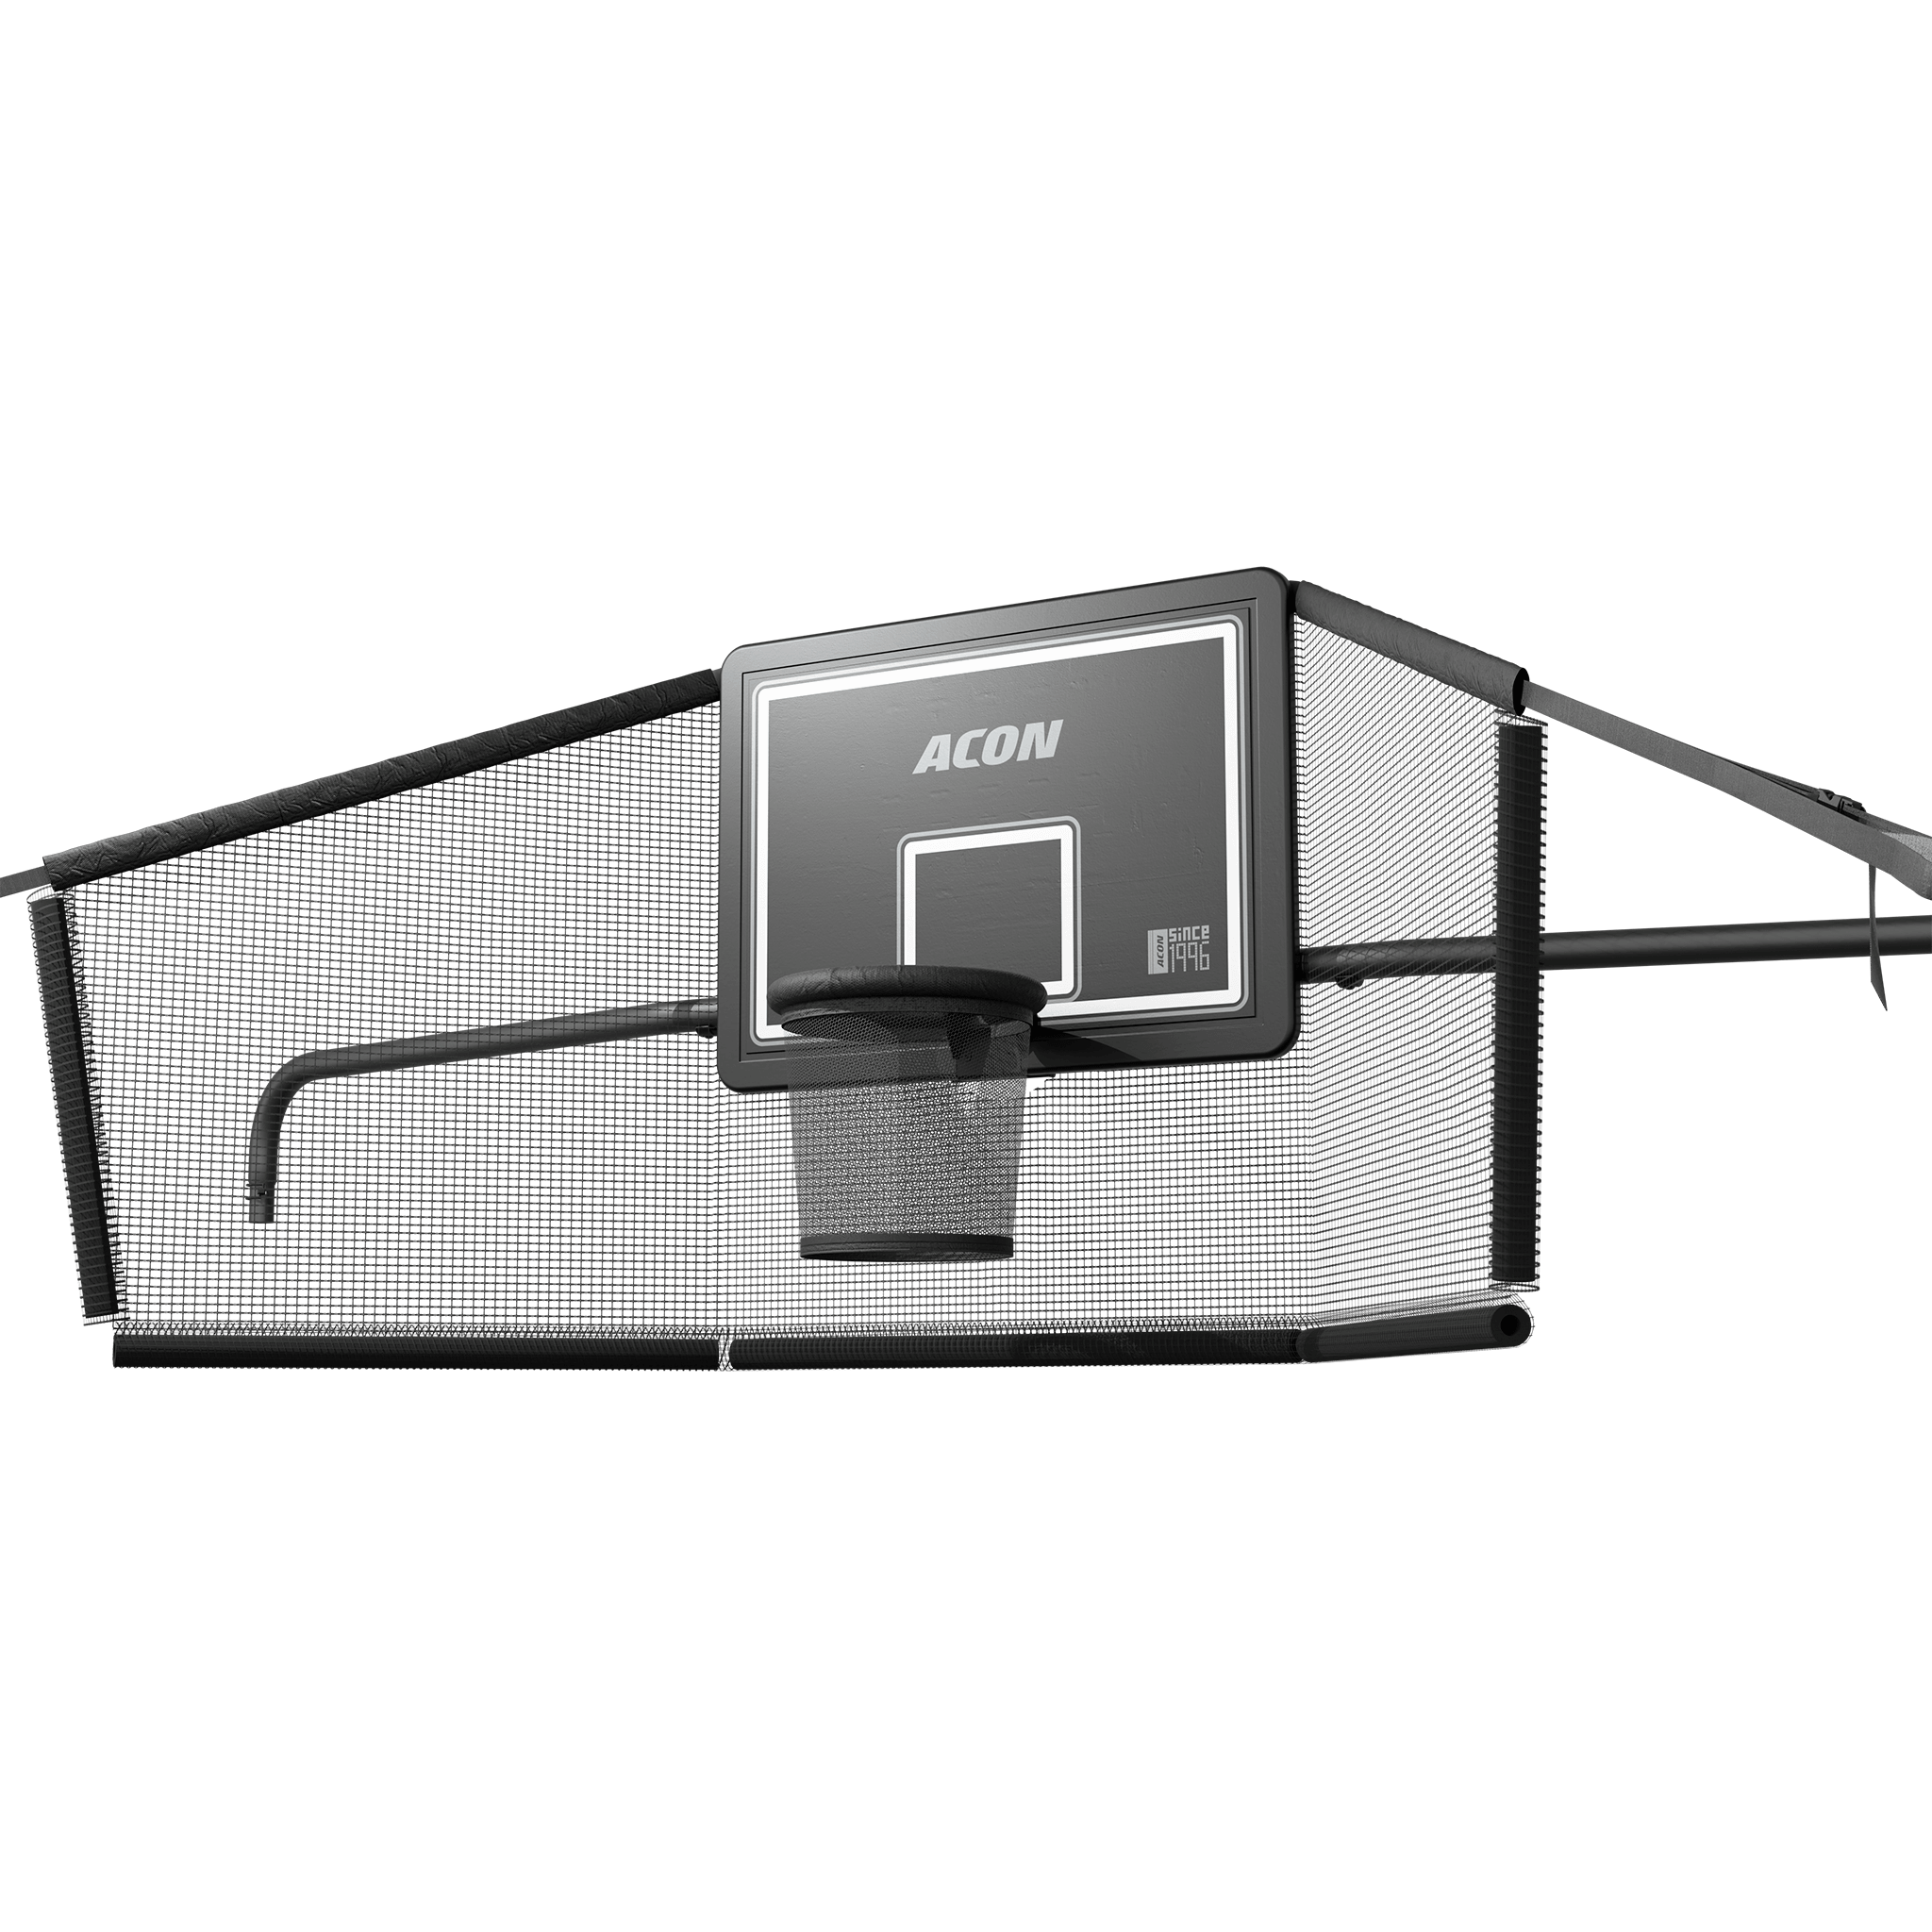 Panier de basket-ball ACON X avec filet arrière pour trampoline rectangulaire de 17 pieds.